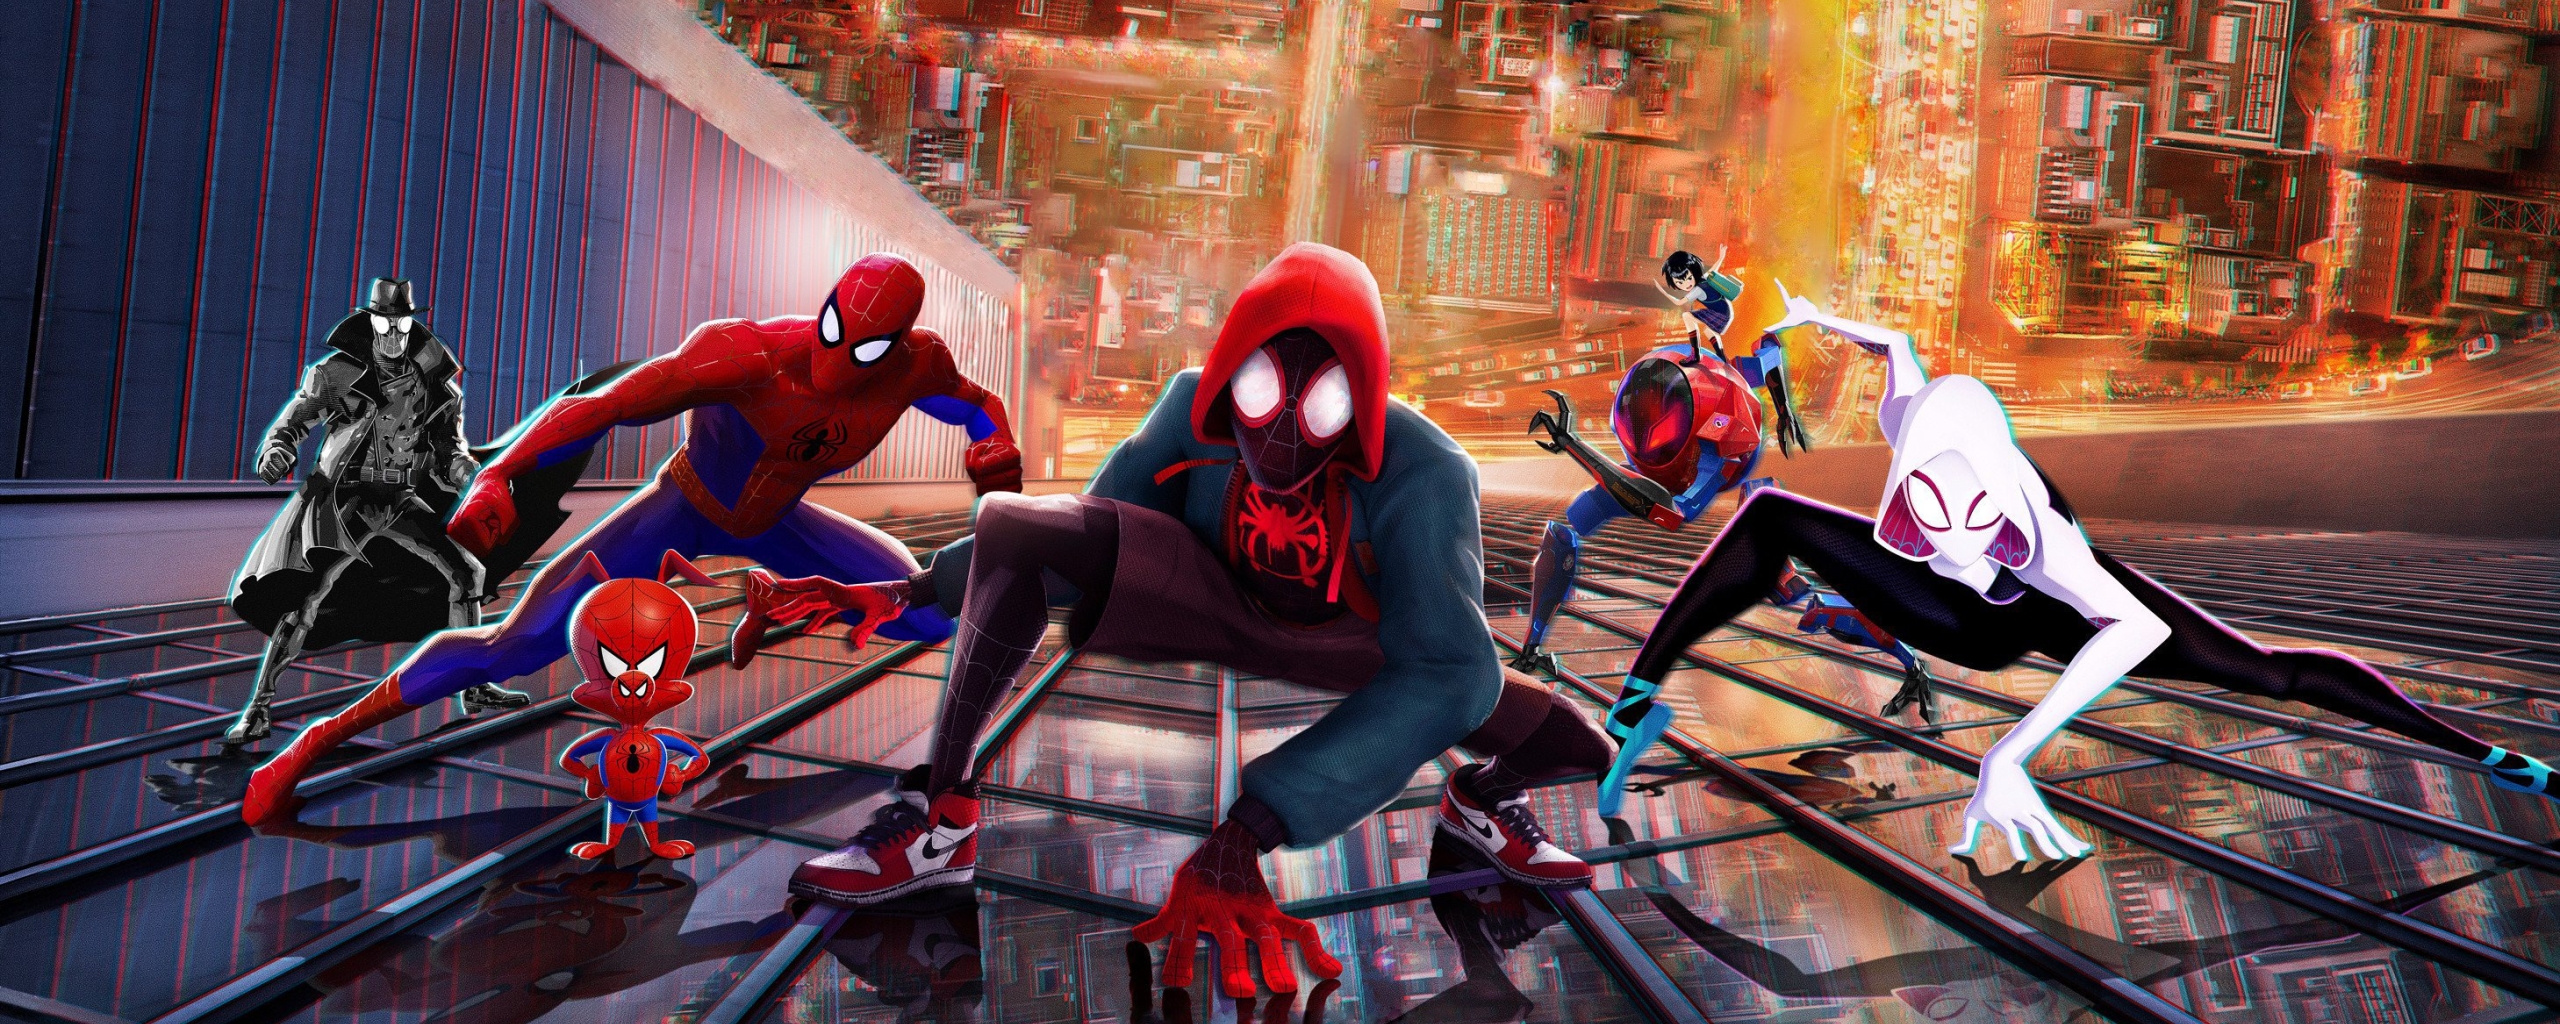 2560x1024 Spider-Man Into The Spider-Verse 2018 Movie 2560x1024 ...